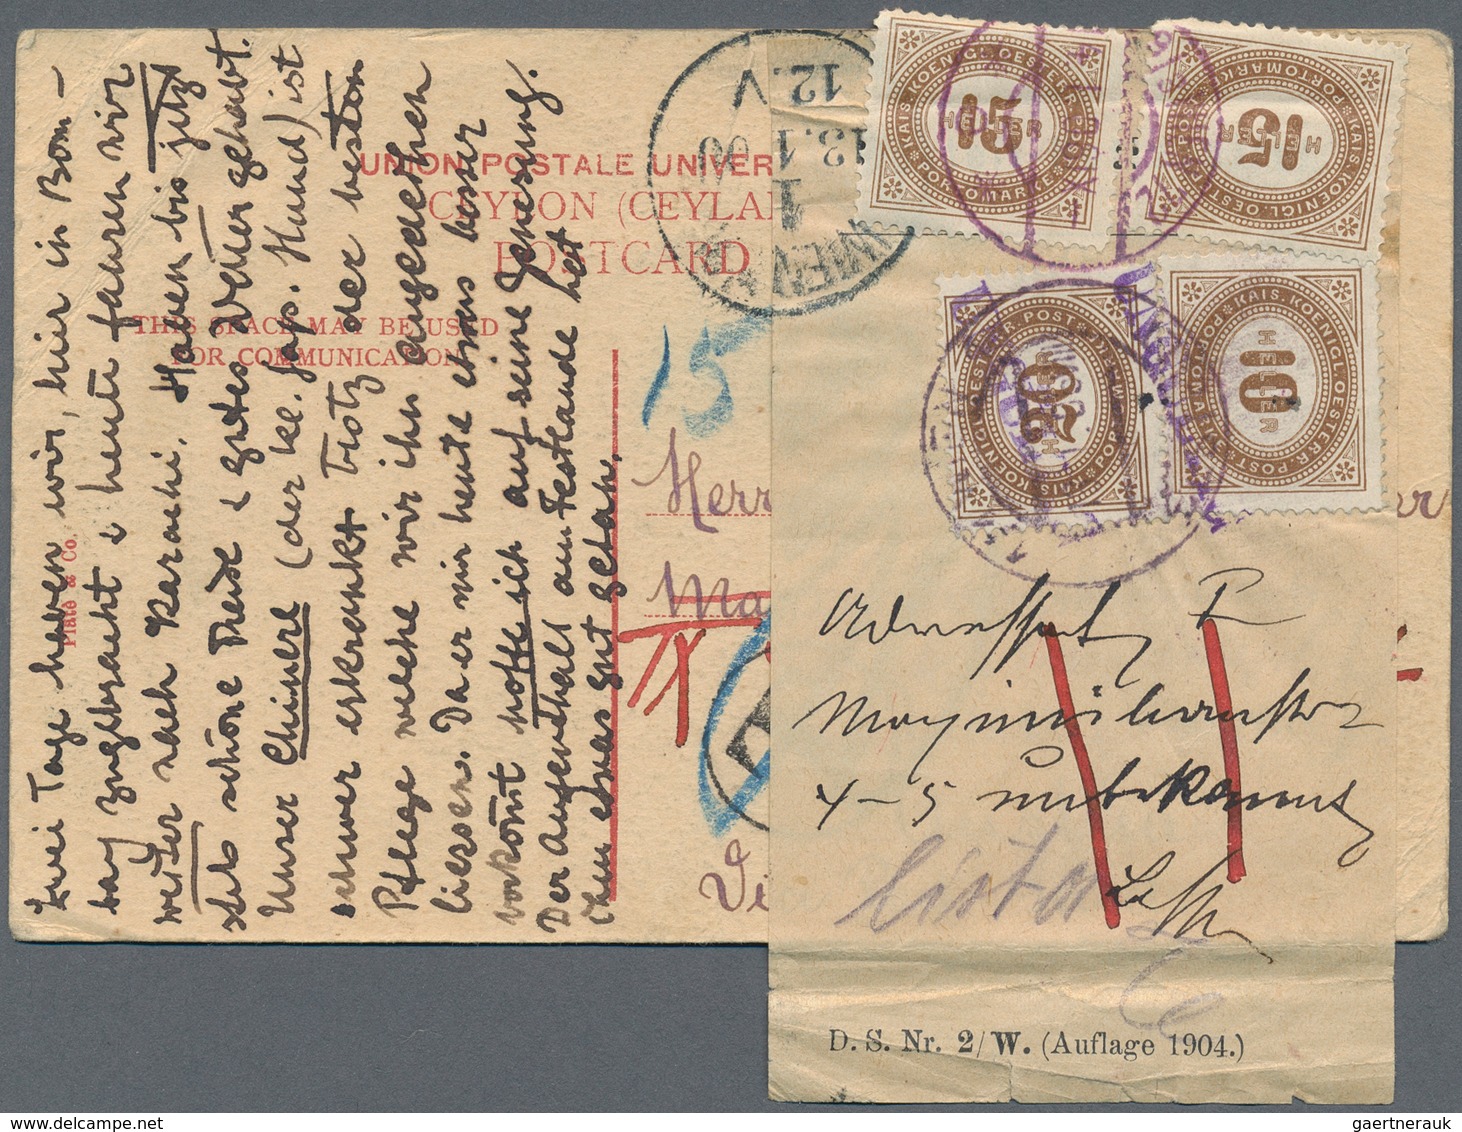 Österreich - Portomarken: 1905, Ansichtskarte Aus INDIEN Nach Wien Frankiert Mit 1 Anna Statt 4 Anna - Postage Due